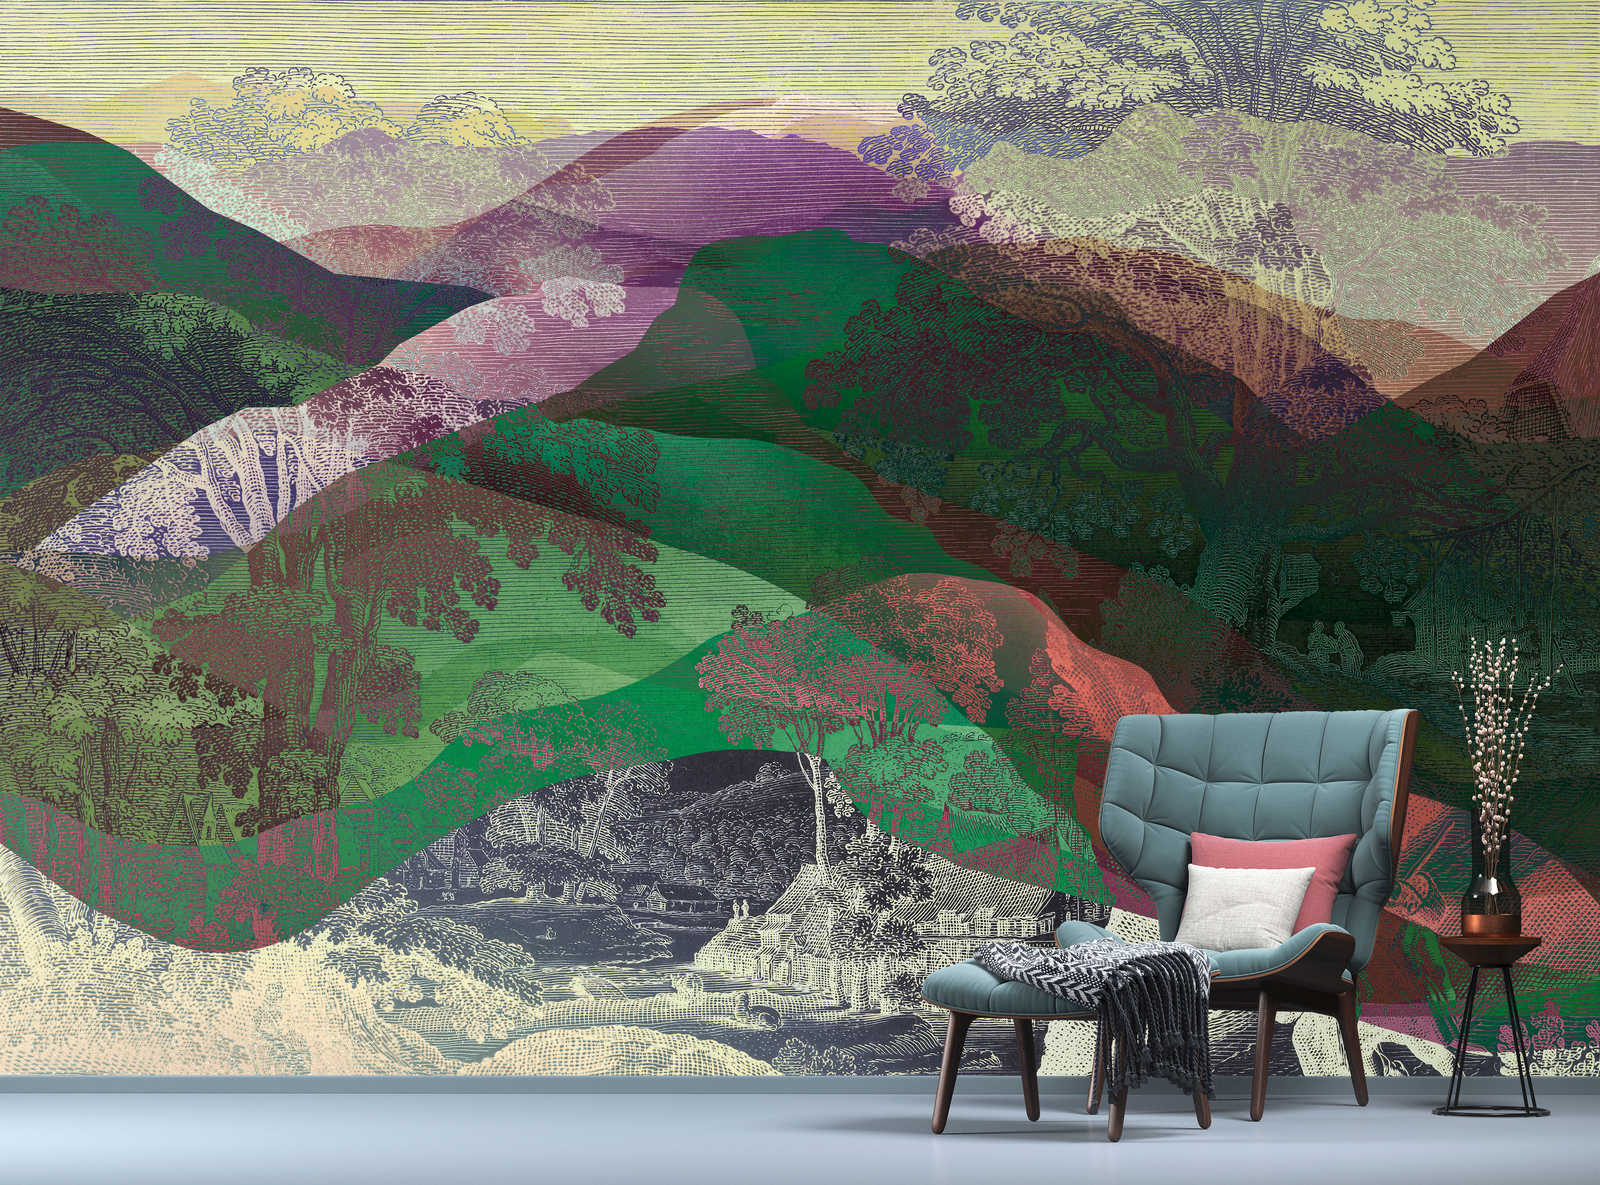             Hidden Valley 1 - Papier peint Vintage meets Modern Paysage de montagne
        